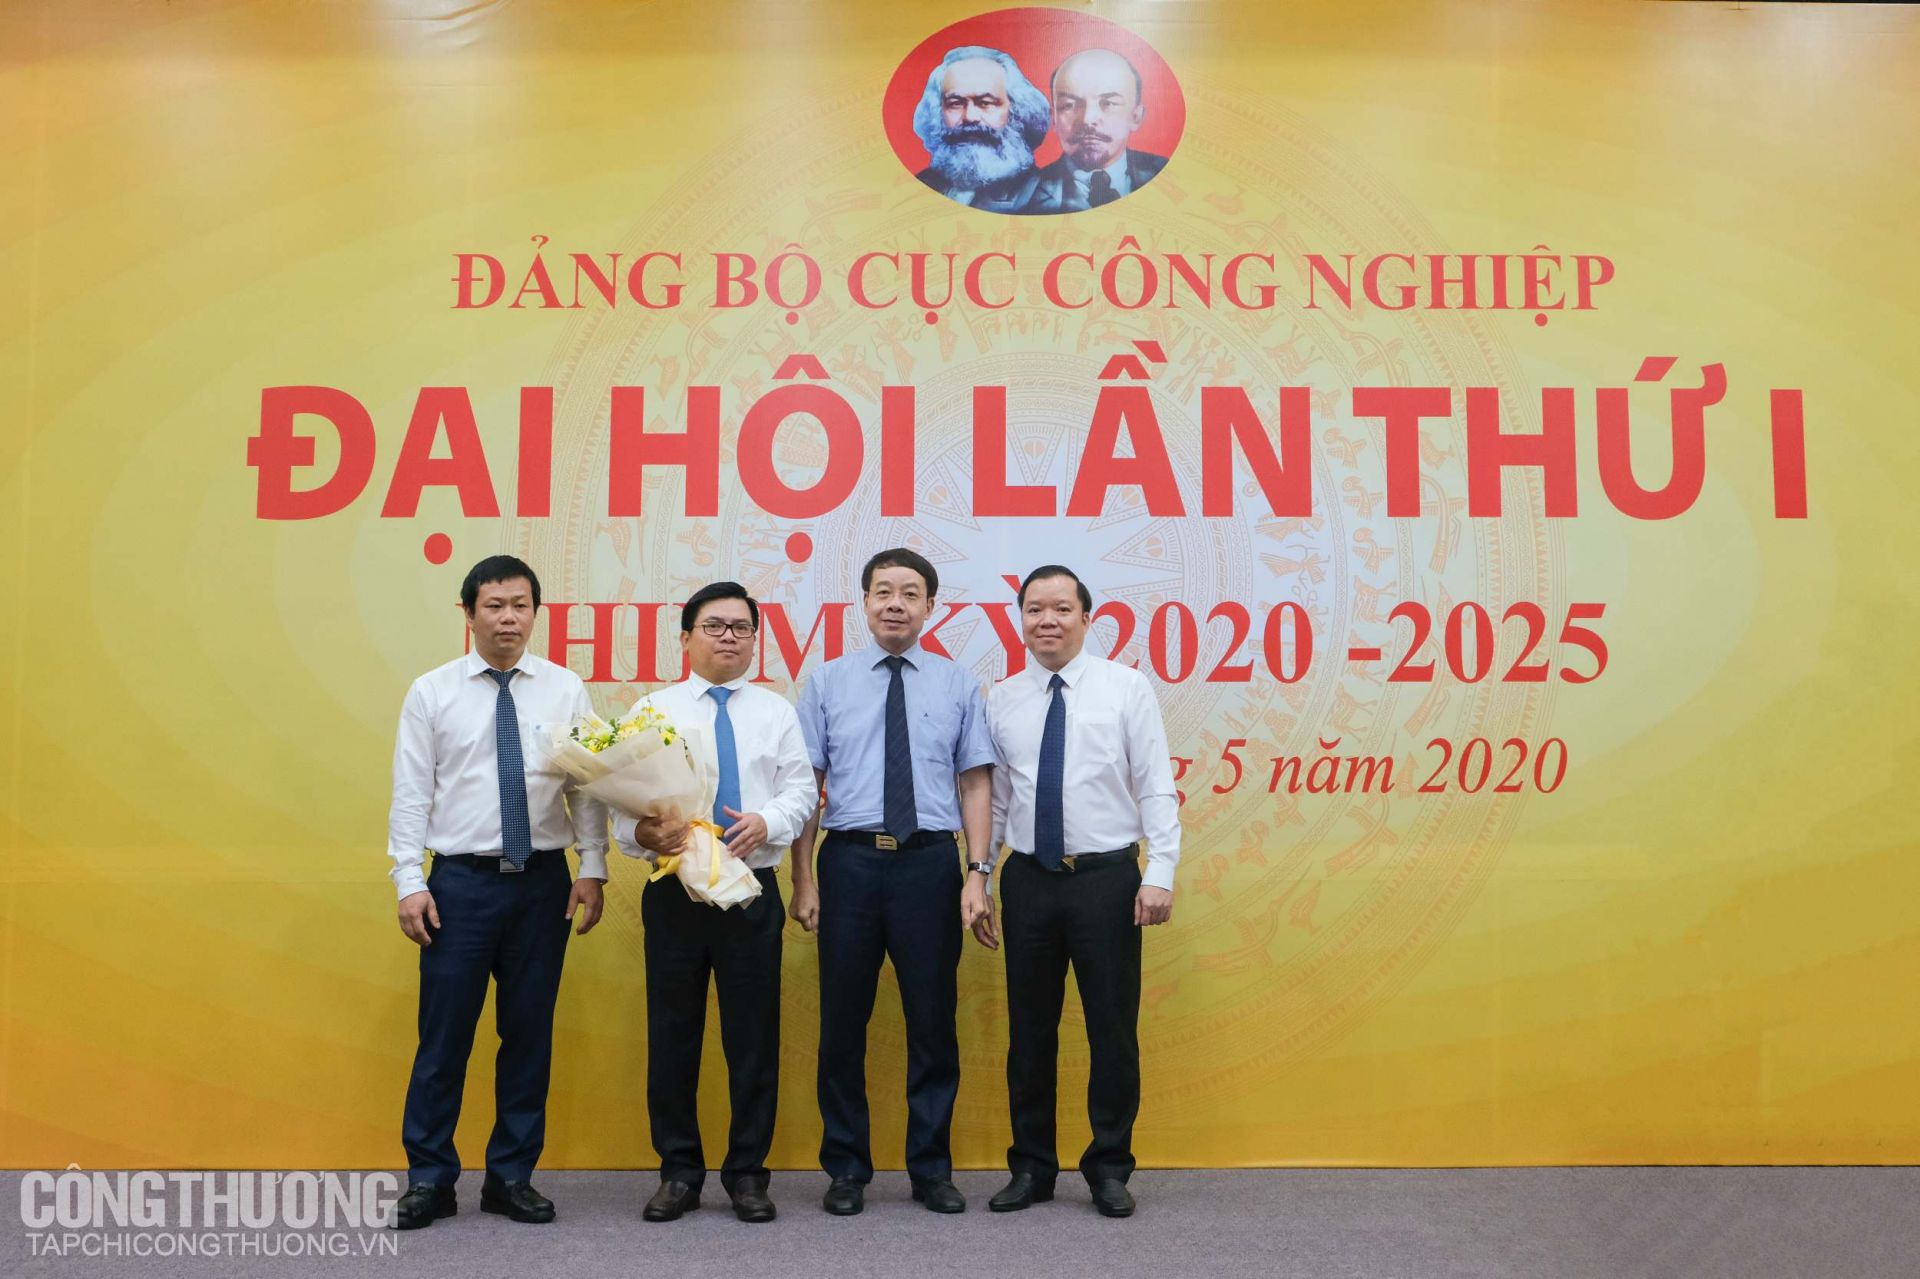 Ban Chấp hành Đảng bộ Cục Công nghiệp nhiệm kỳ 2020 – 2025 ra mắt nhận nhiệm vụ